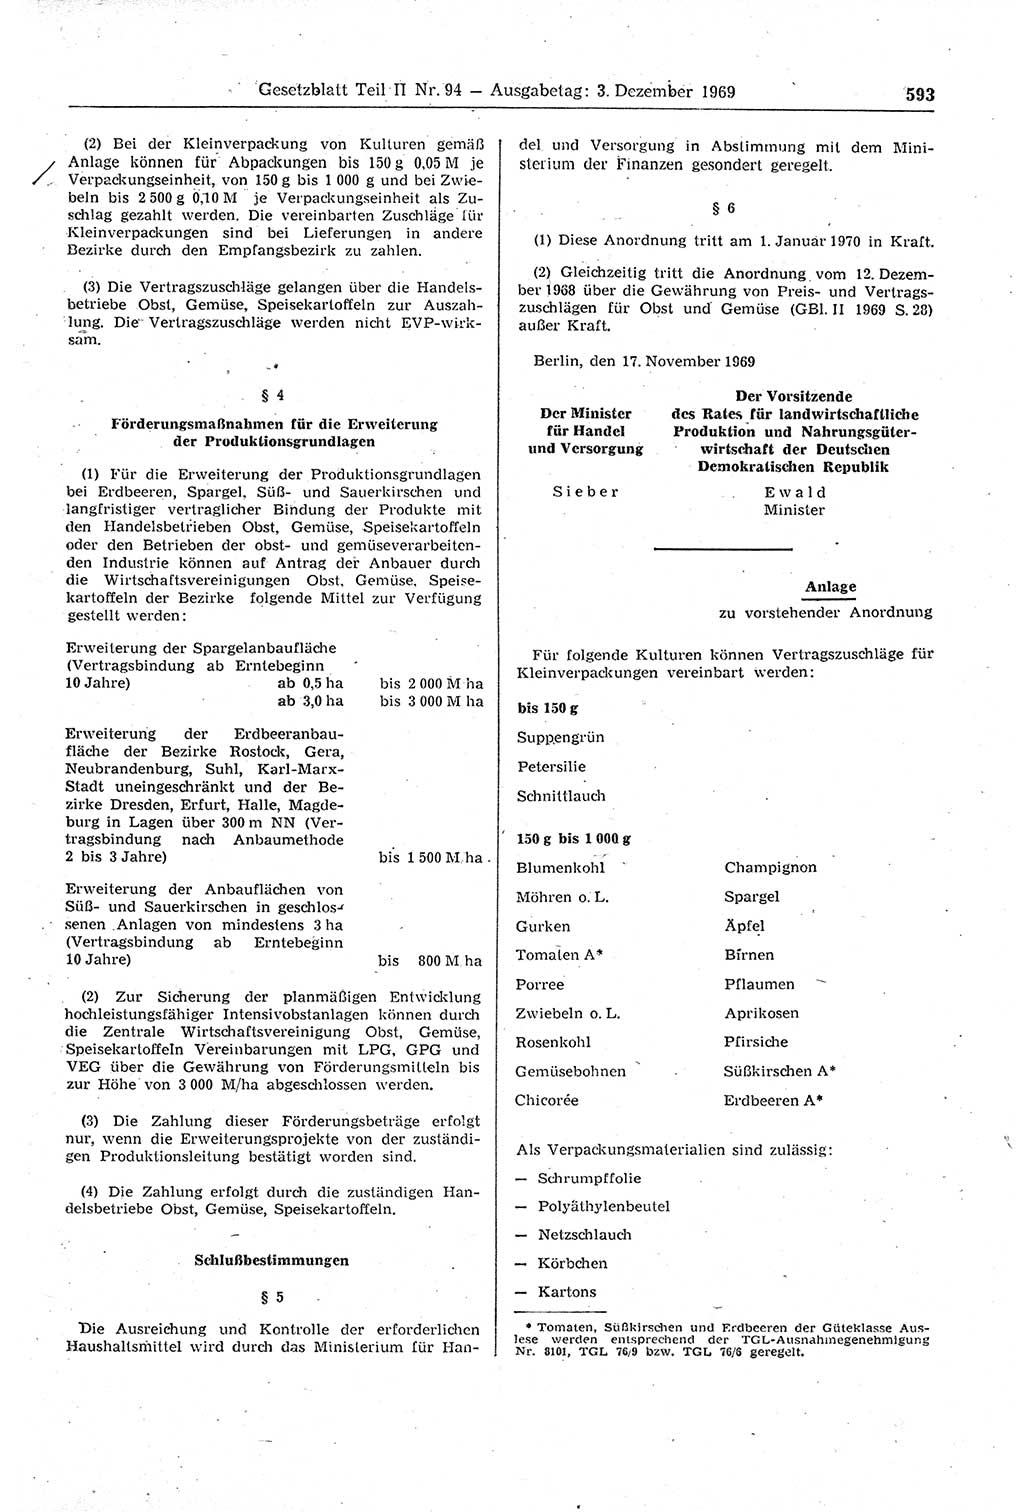 Gesetzblatt (GBl.) der Deutschen Demokratischen Republik (DDR) Teil ⅠⅠ 1969, Seite 593 (GBl. DDR ⅠⅠ 1969, S. 593)